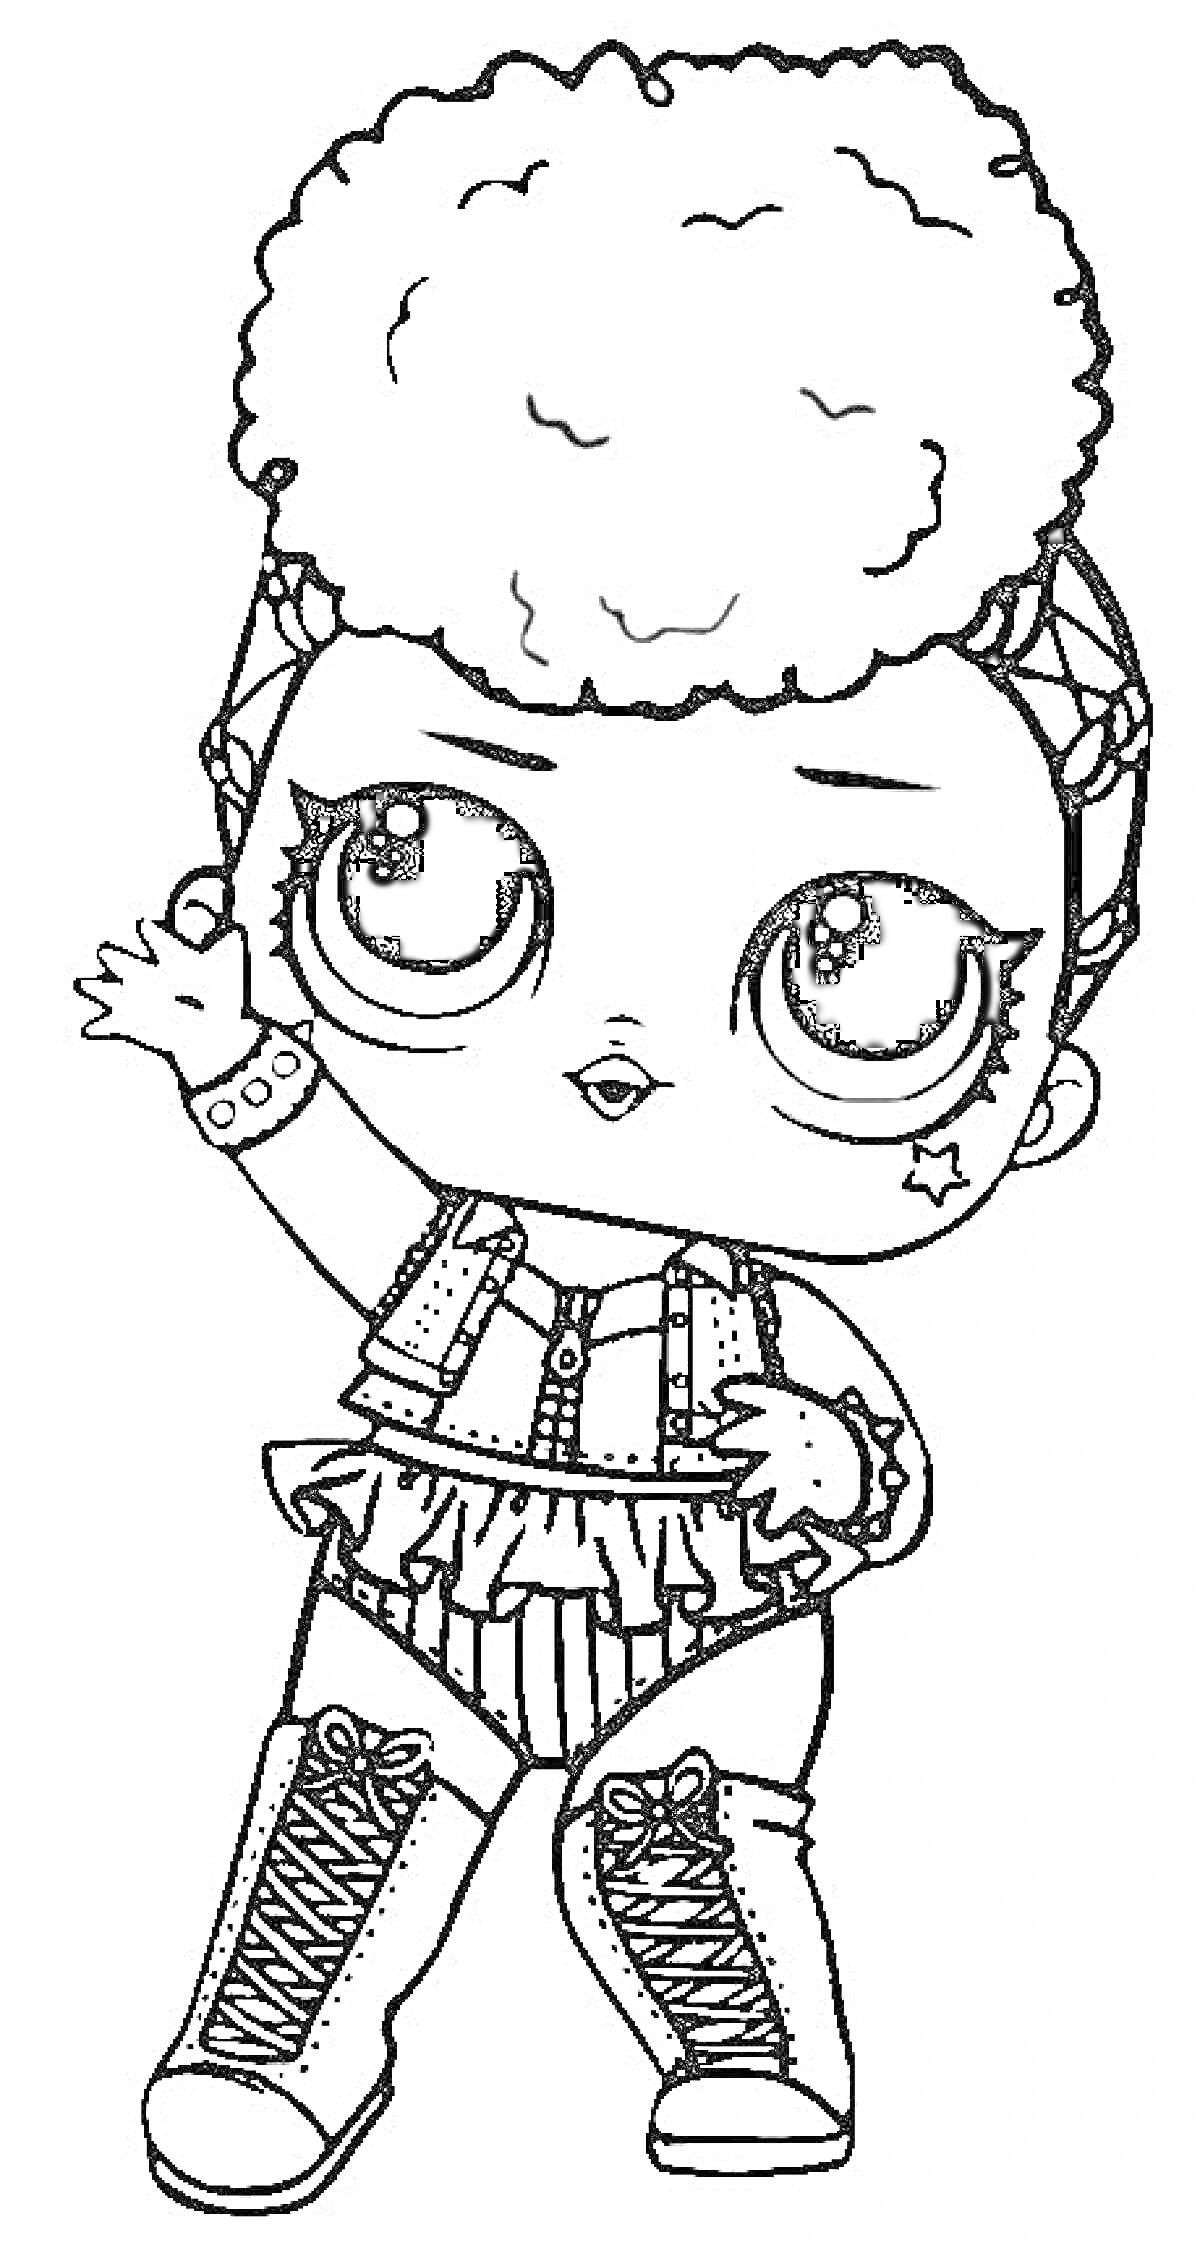 Кукла Лол с объемными волосами, в жилетке с бахромой, высоких ботинках и браслетом, с бантом на голове, звездочкой на щеке и поднятой рукой